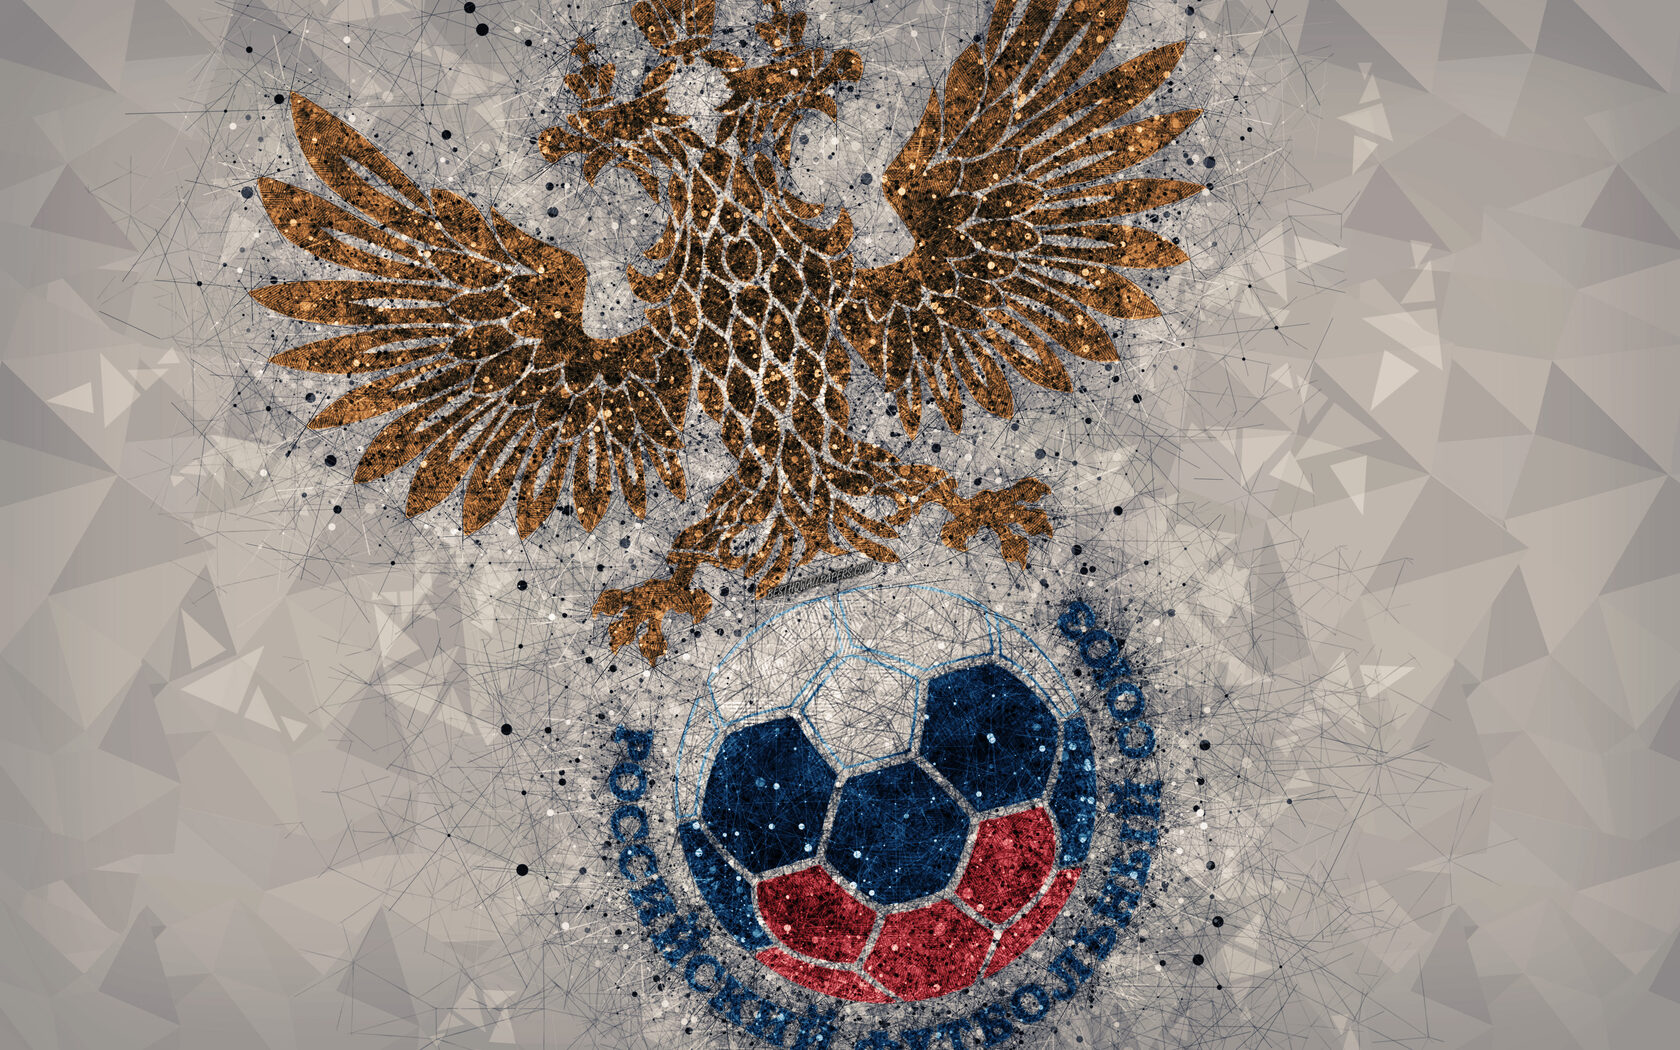 Сборная России по футболу эмблема